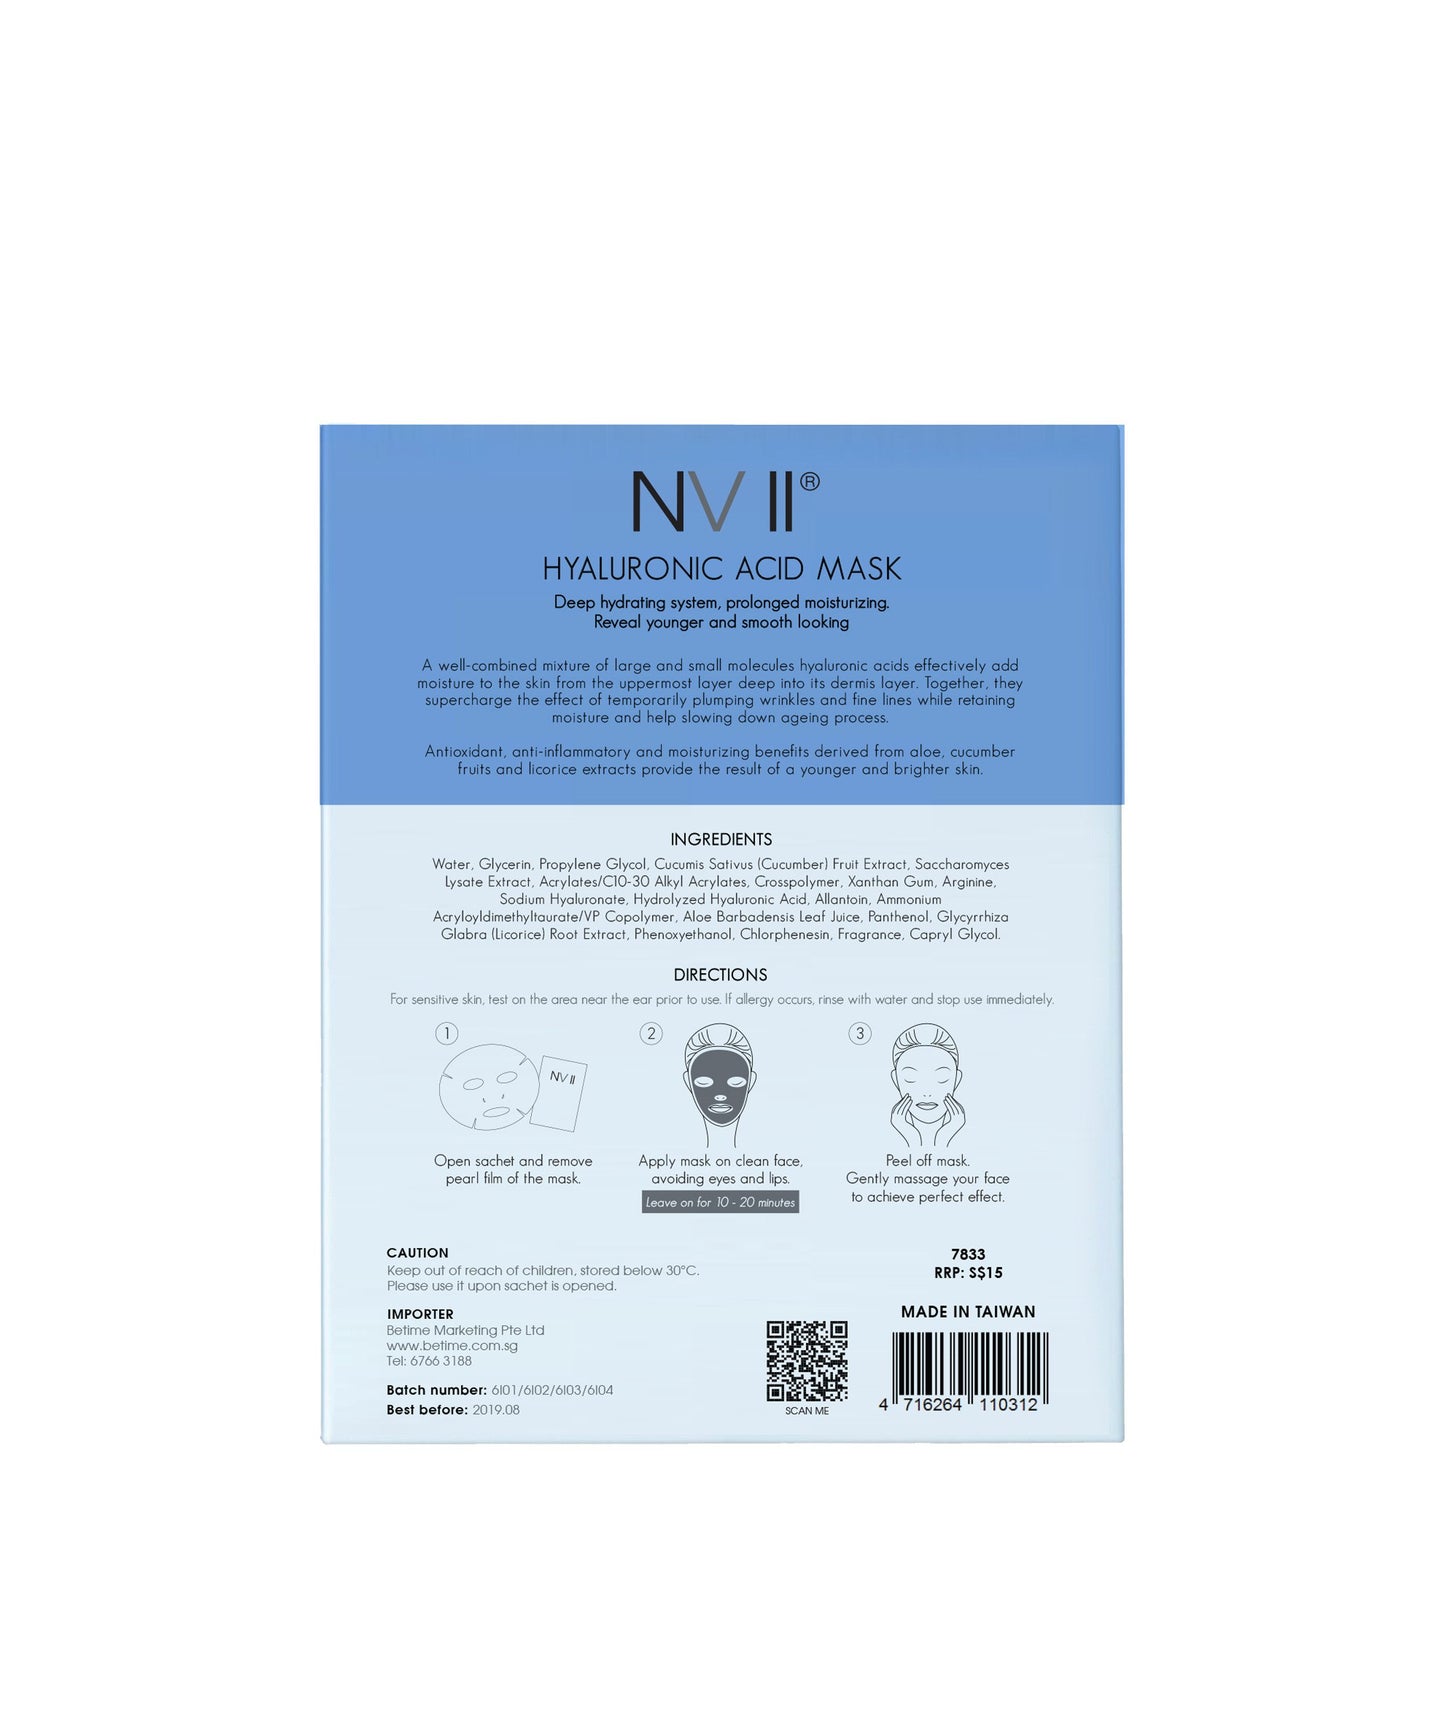 NV II Hyaluronic Acid Mask